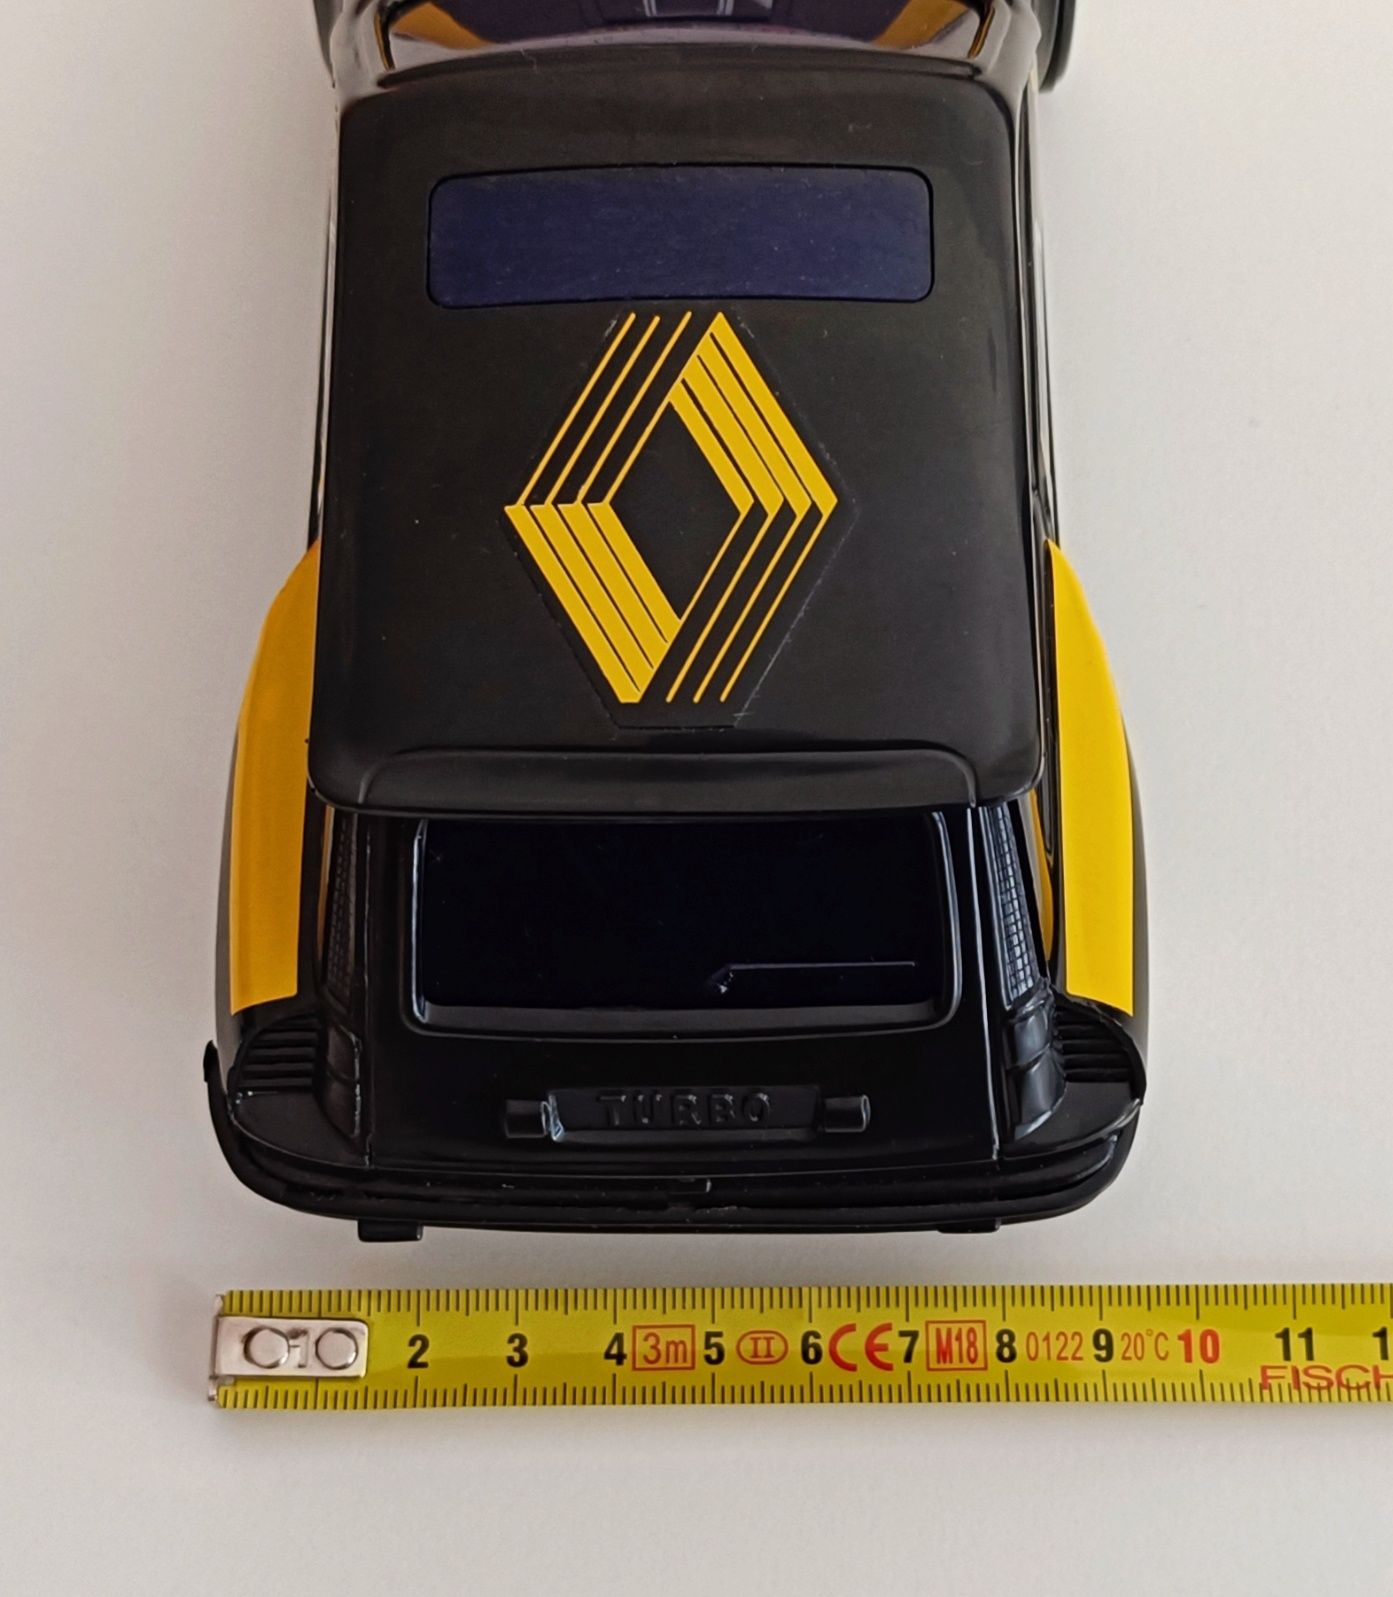 Renault 5 Turbo. Miniatura plástico a pilhas. Base para réplica